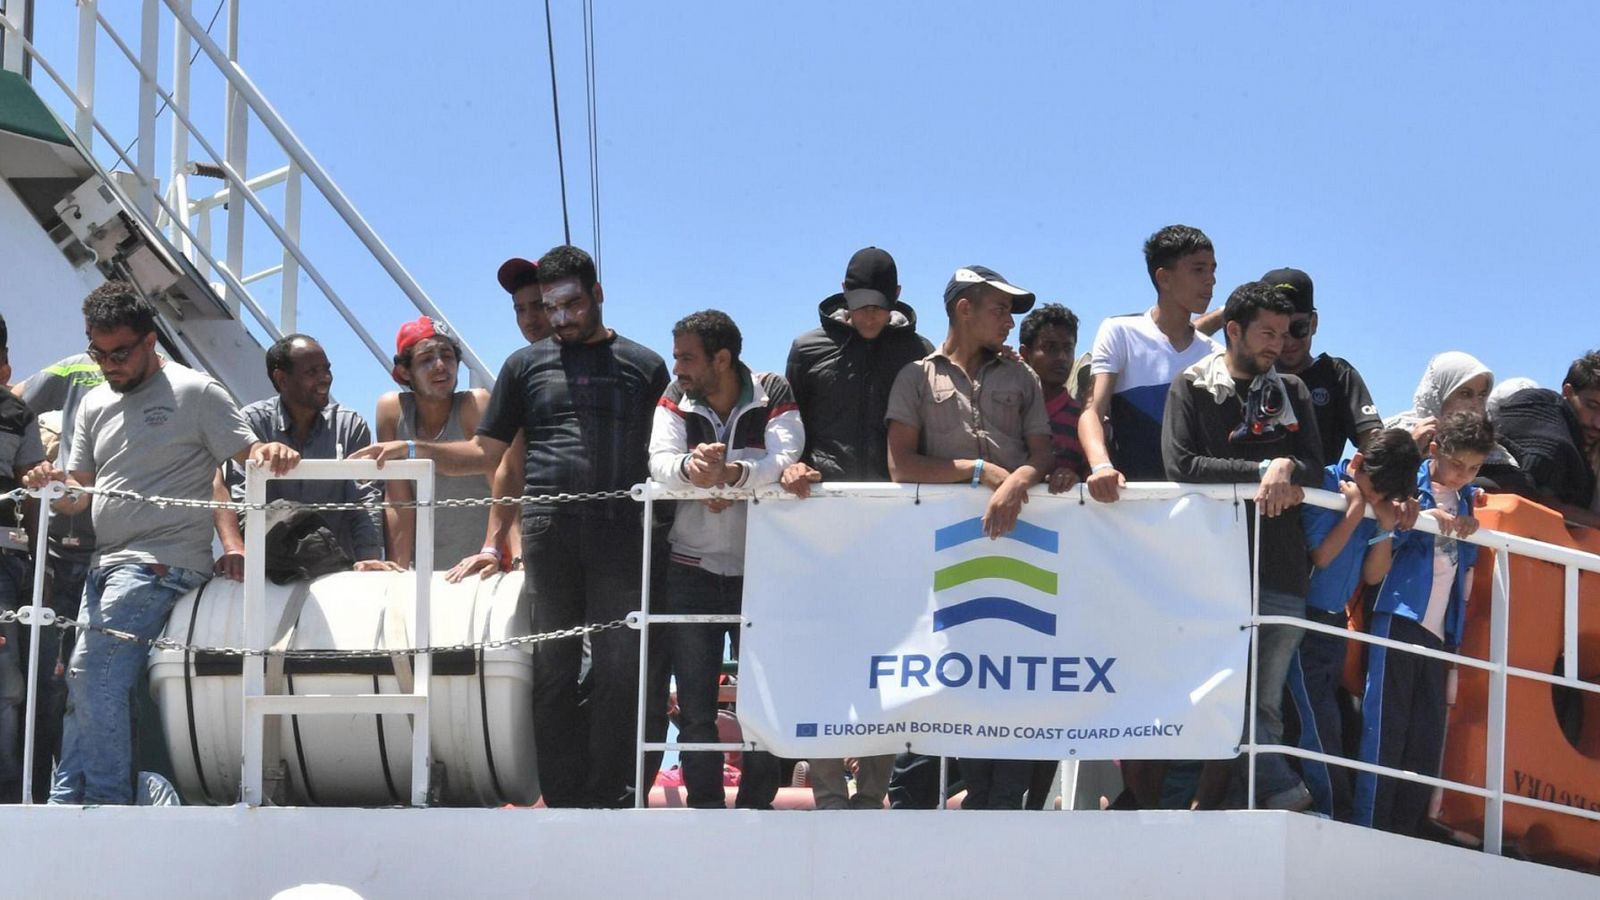 Migrantes y refugiados rescatados en el Mediterráneo, llegan a Salerno, Italia